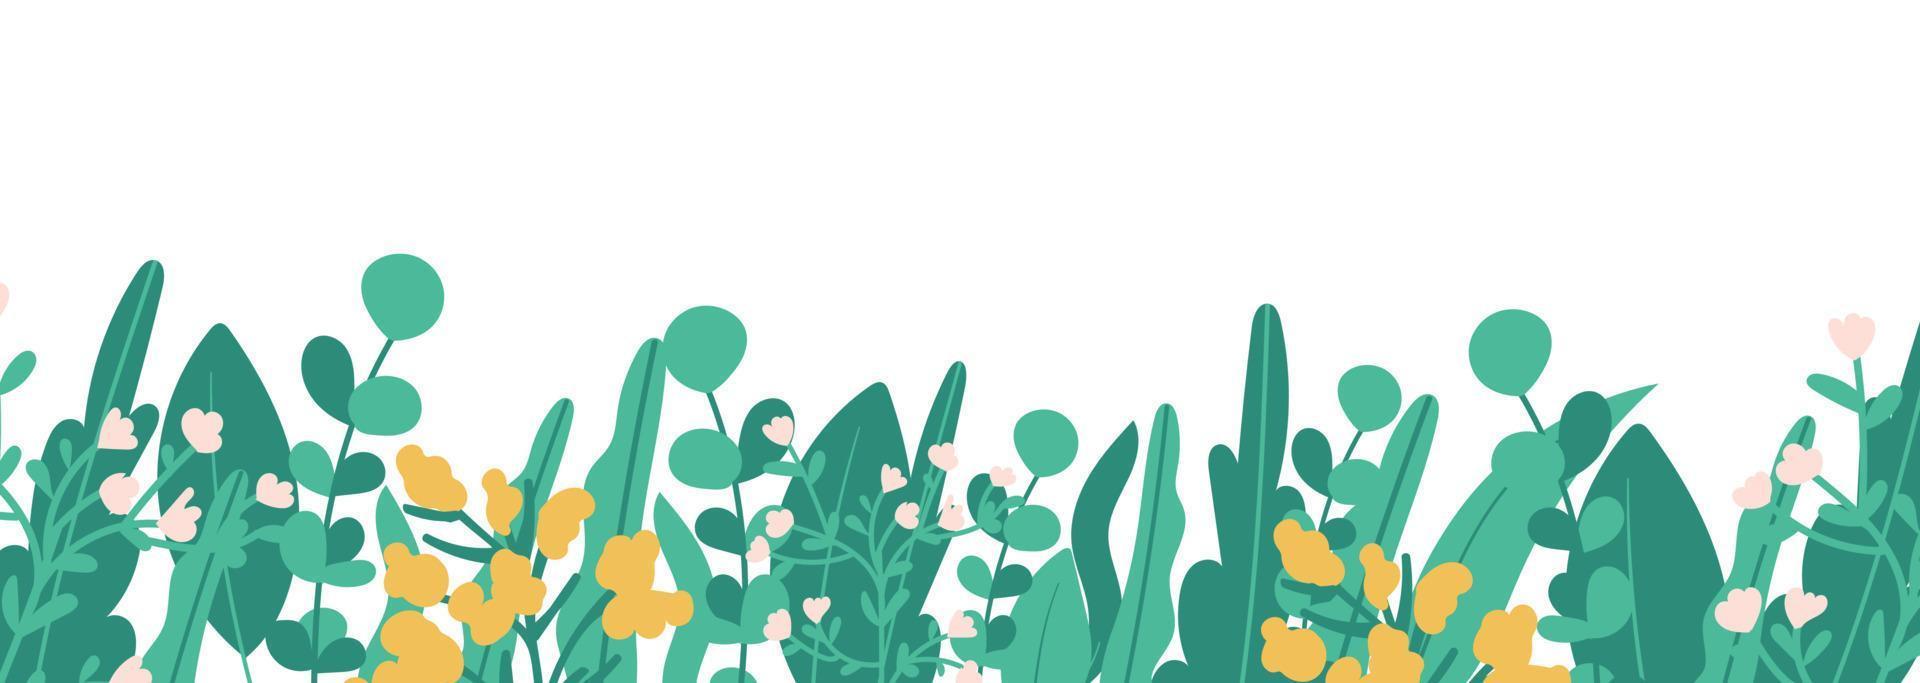 planten minimalistische vector banner. hand getekende bloemen, gras, takken, bladeren op een witte achtergrond. groen eenvoudig horizontaal patroon. eenvoudige vlakke stijl. alle elementen zijn geïsoleerd en bewerkbaar